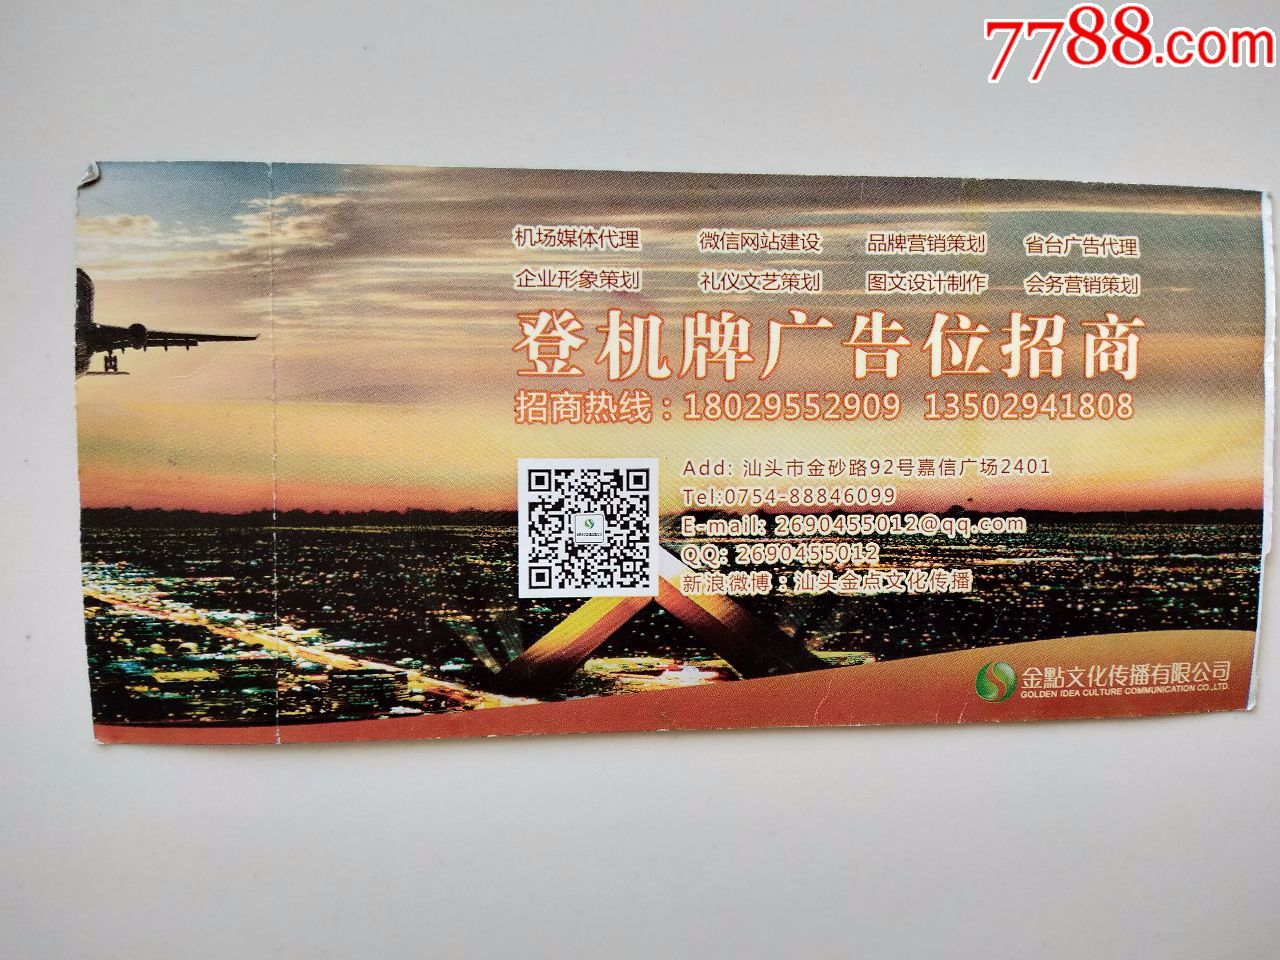 揭阳潮汕机场——三个城市共享的机场 - 知乎